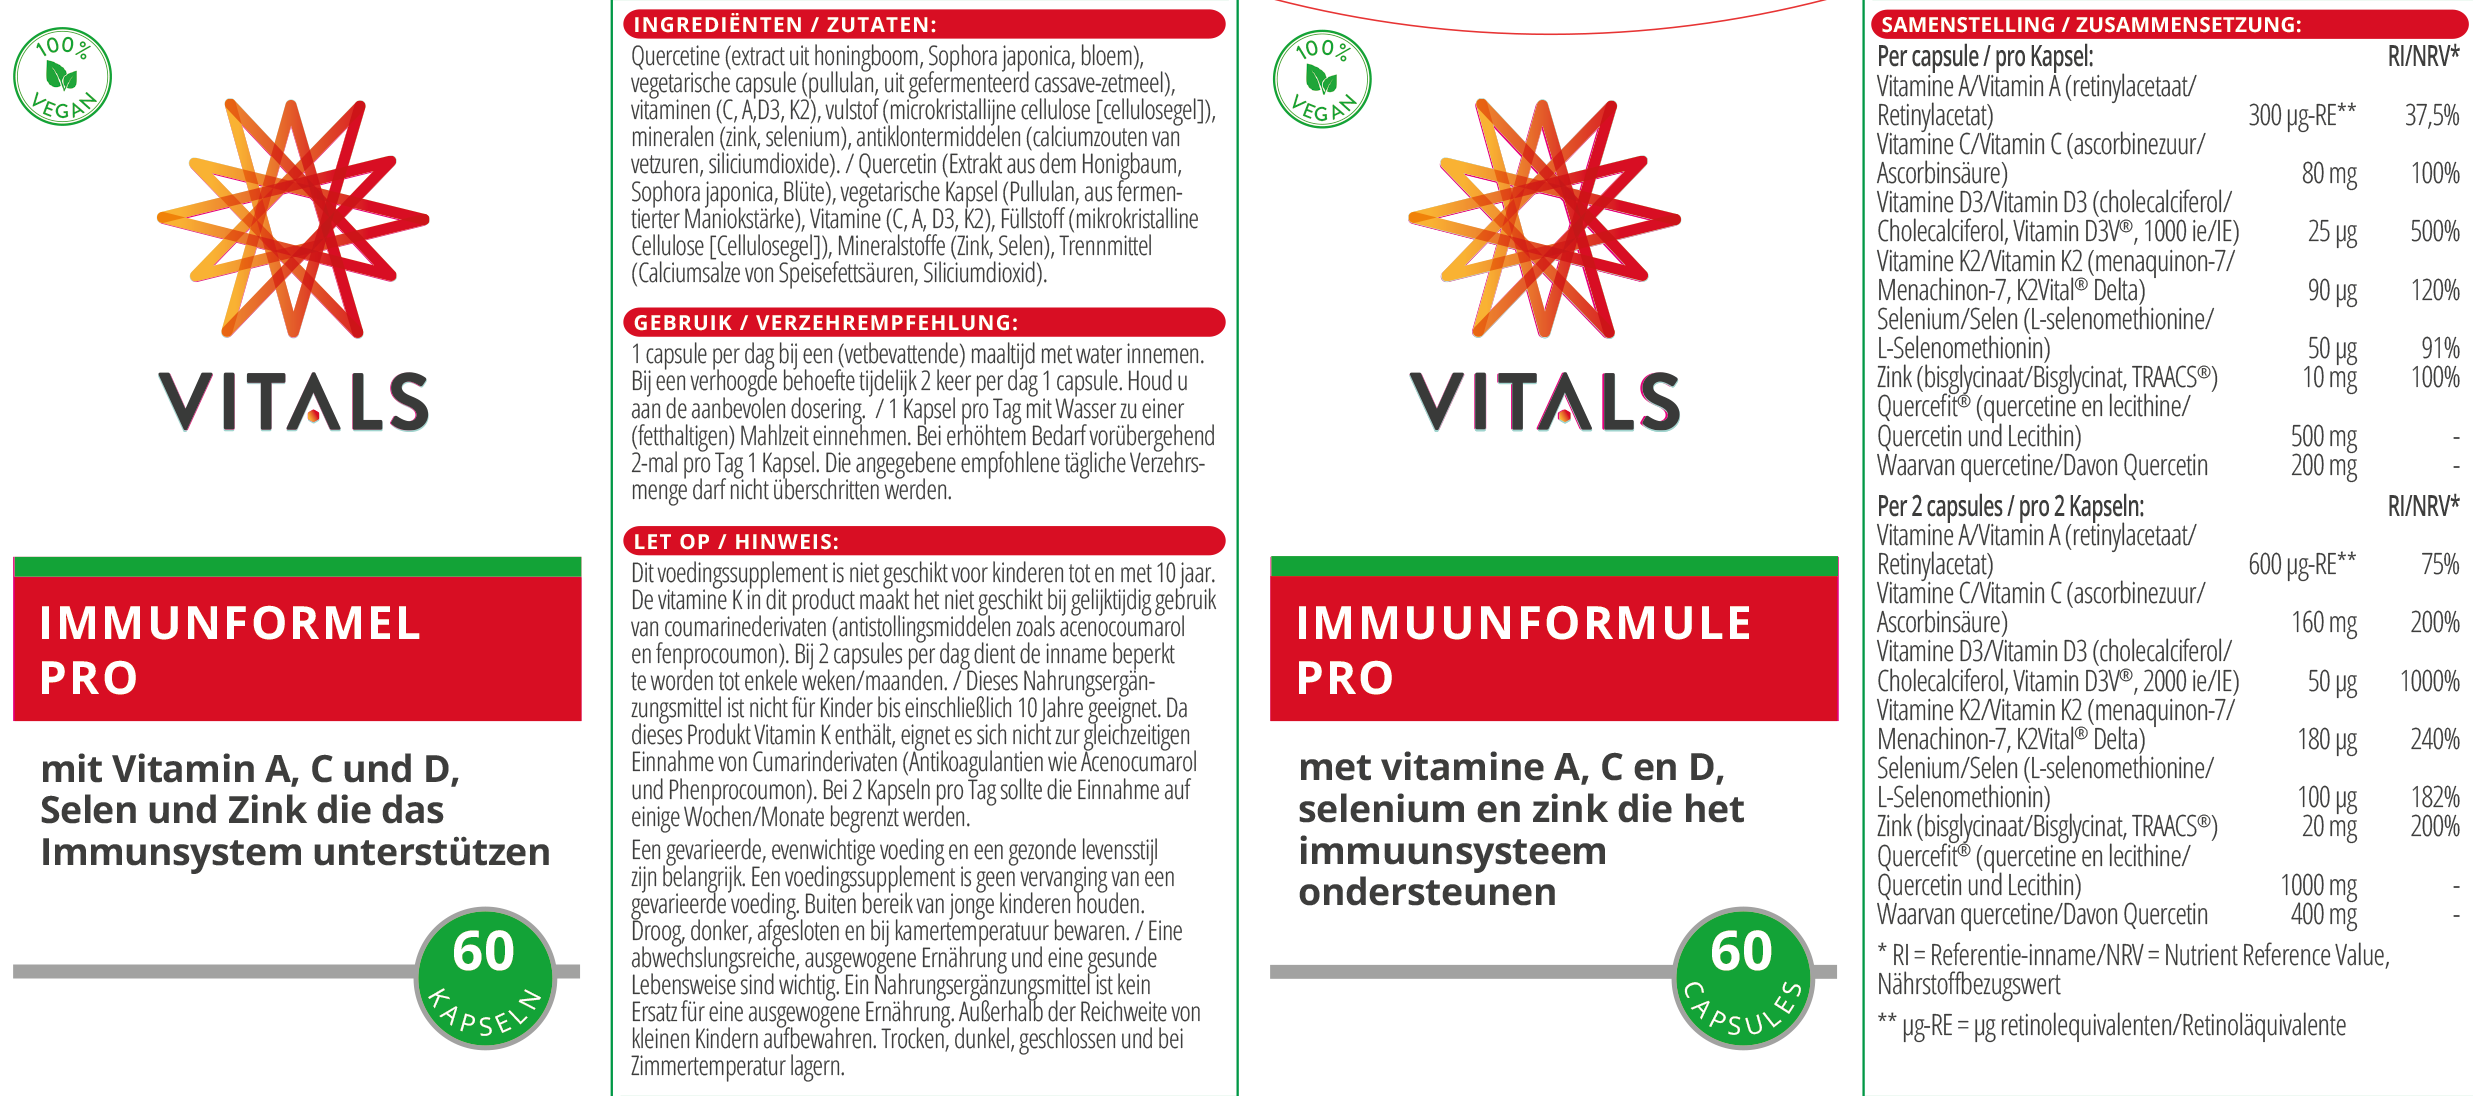 Immunformel Pro